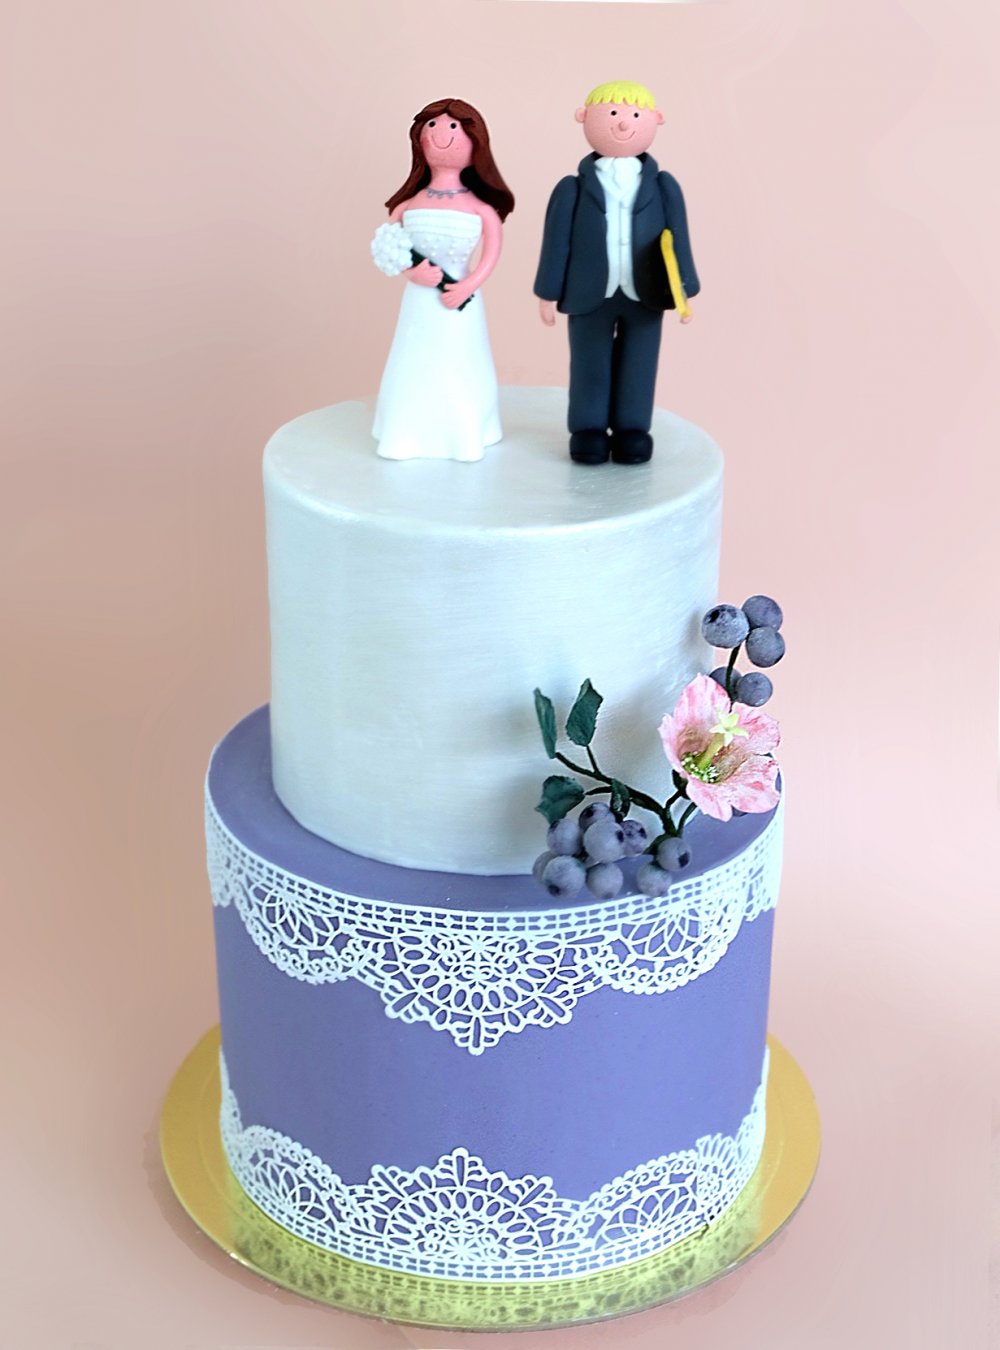 Свадебный торт в стиле прованс с лавандовым нижним ярусом с сахарными кружевами, сатиновым верхним ярусом и, контрастной нежному торту, смешной свадебной парочкой с женихом-серфером. 